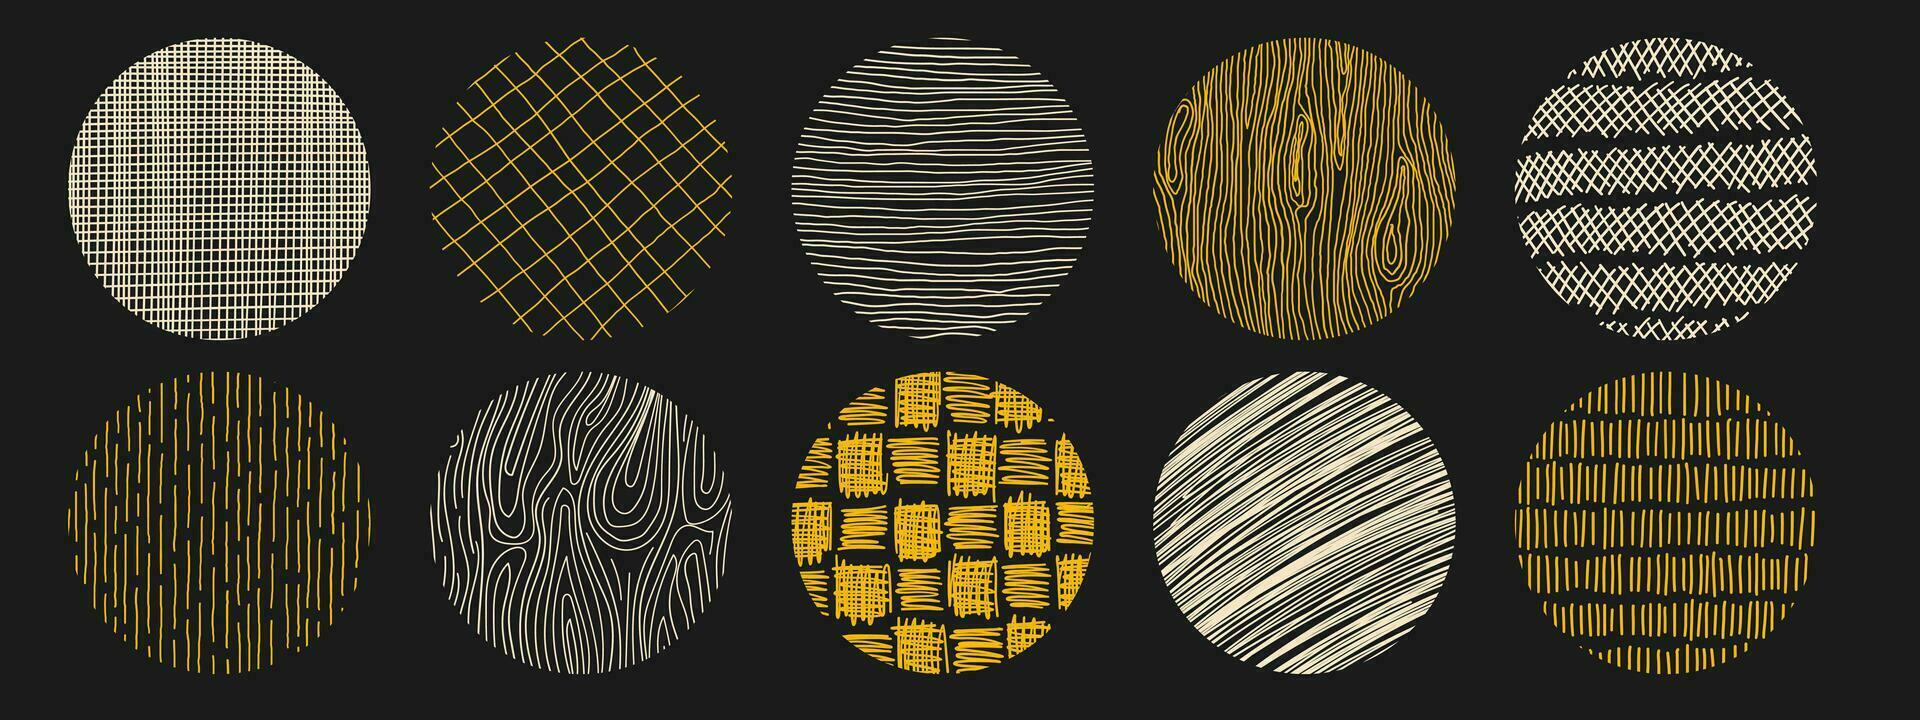 reeks van hand- getrokken potlood lijn structuur met verschillend cirkel patronen. kruisarcering, hout, regenen, stippelen textuur. vector